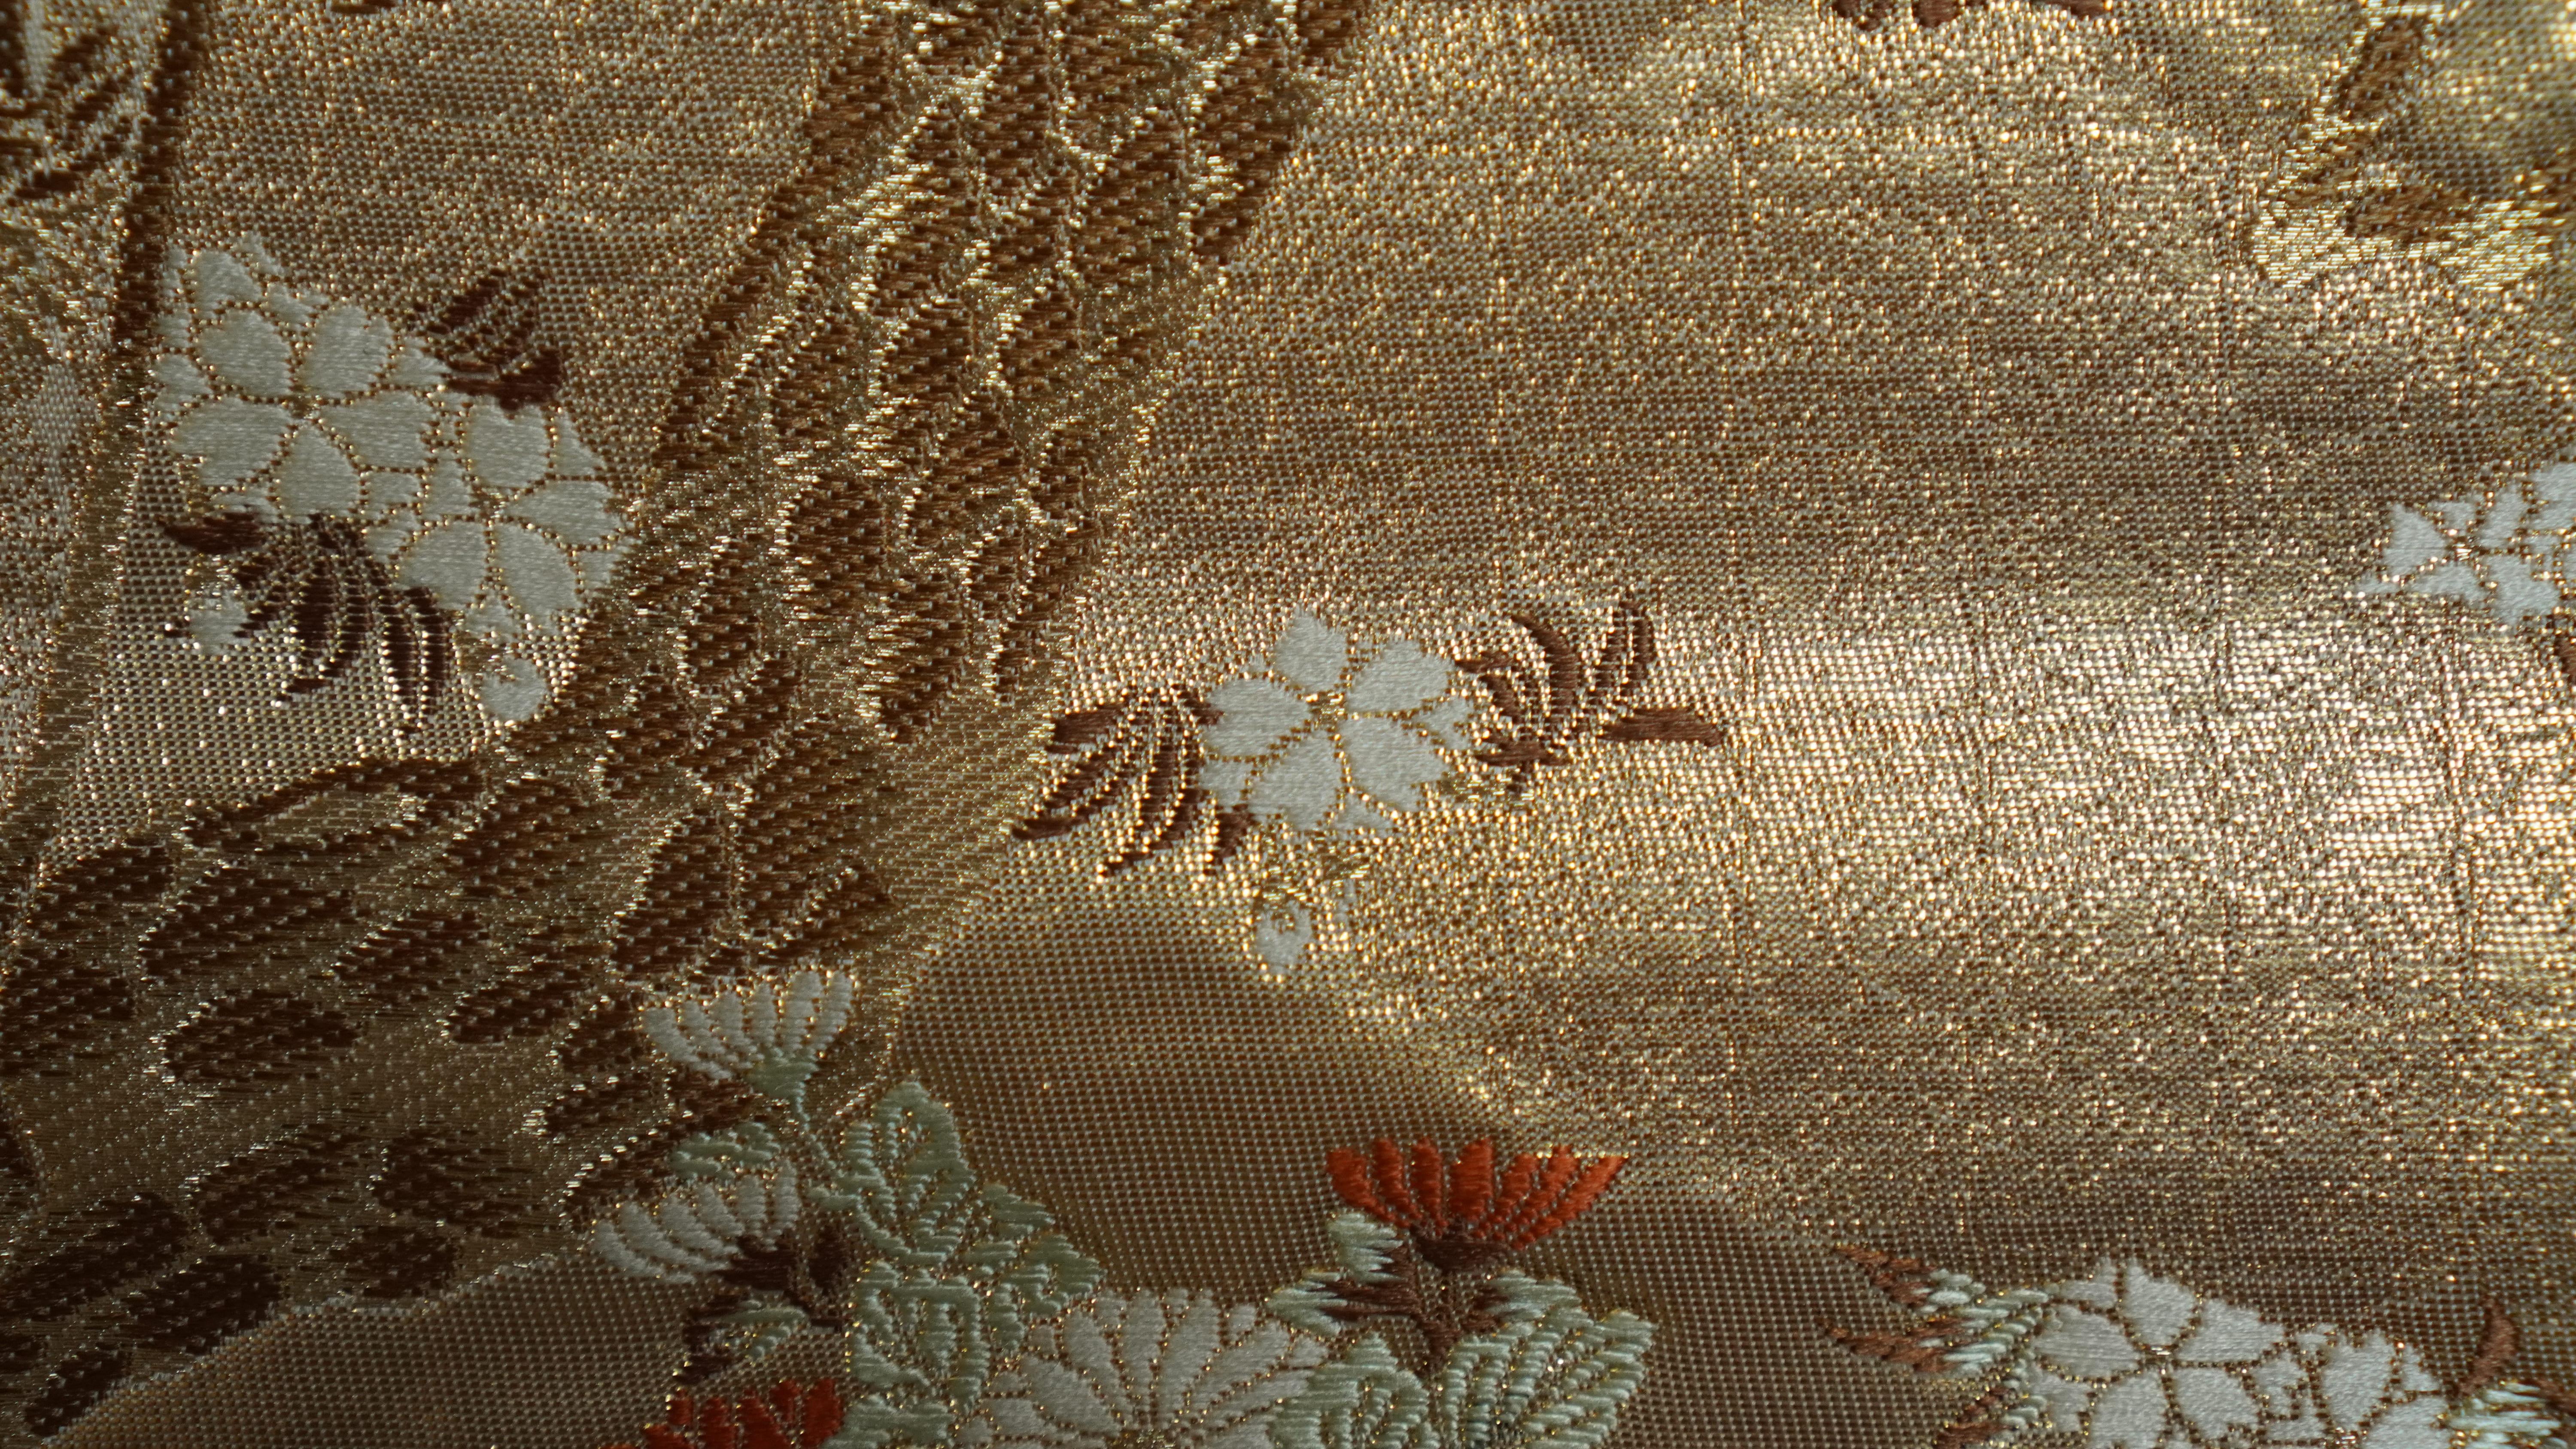 Japanese Kimono Art / Kimono Wall Art, The Queen of Peacocks 2